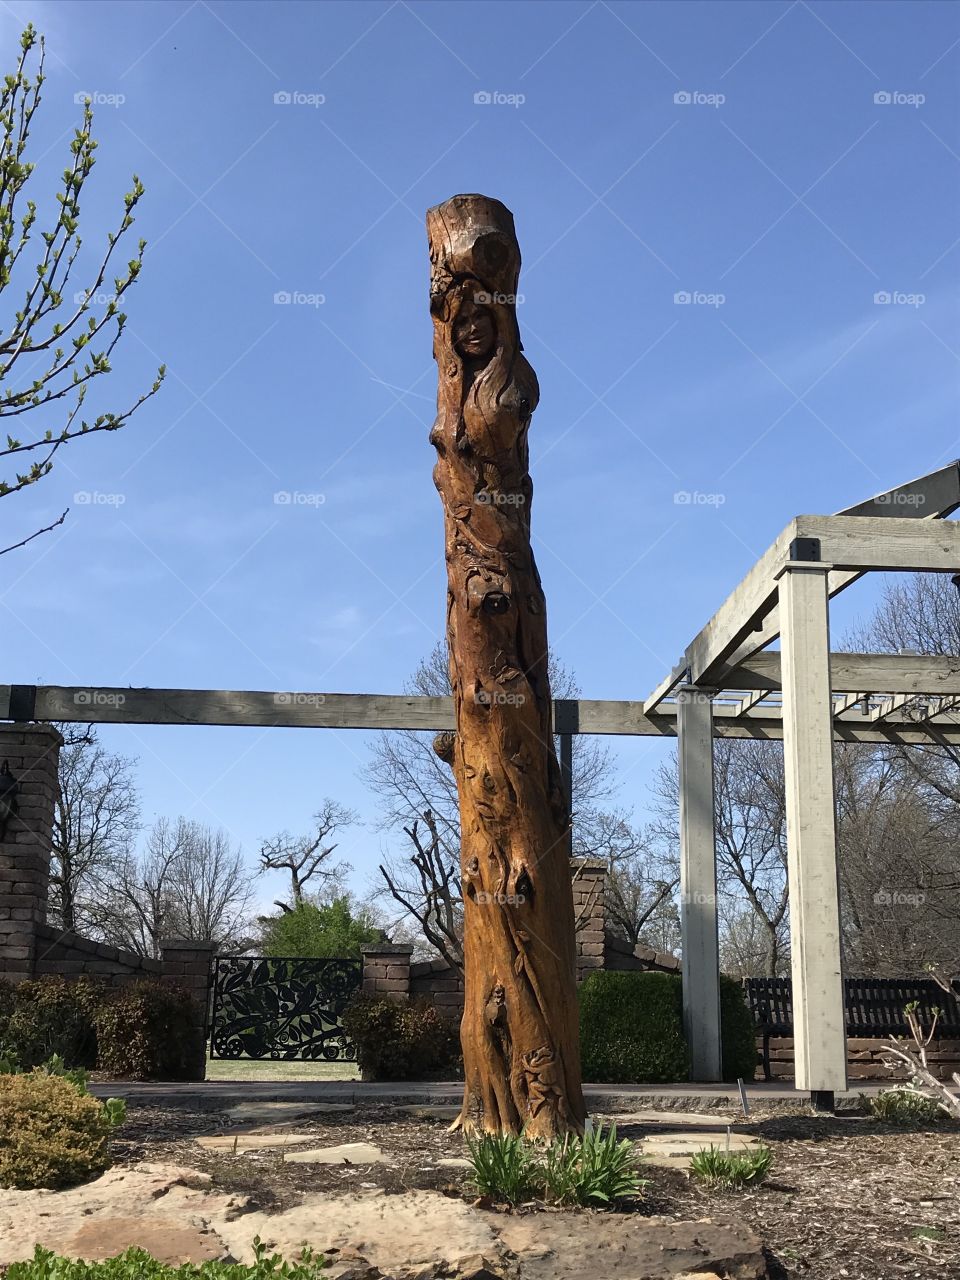 Totem pole at Woodward Park in Tulsa, Oklahoma 